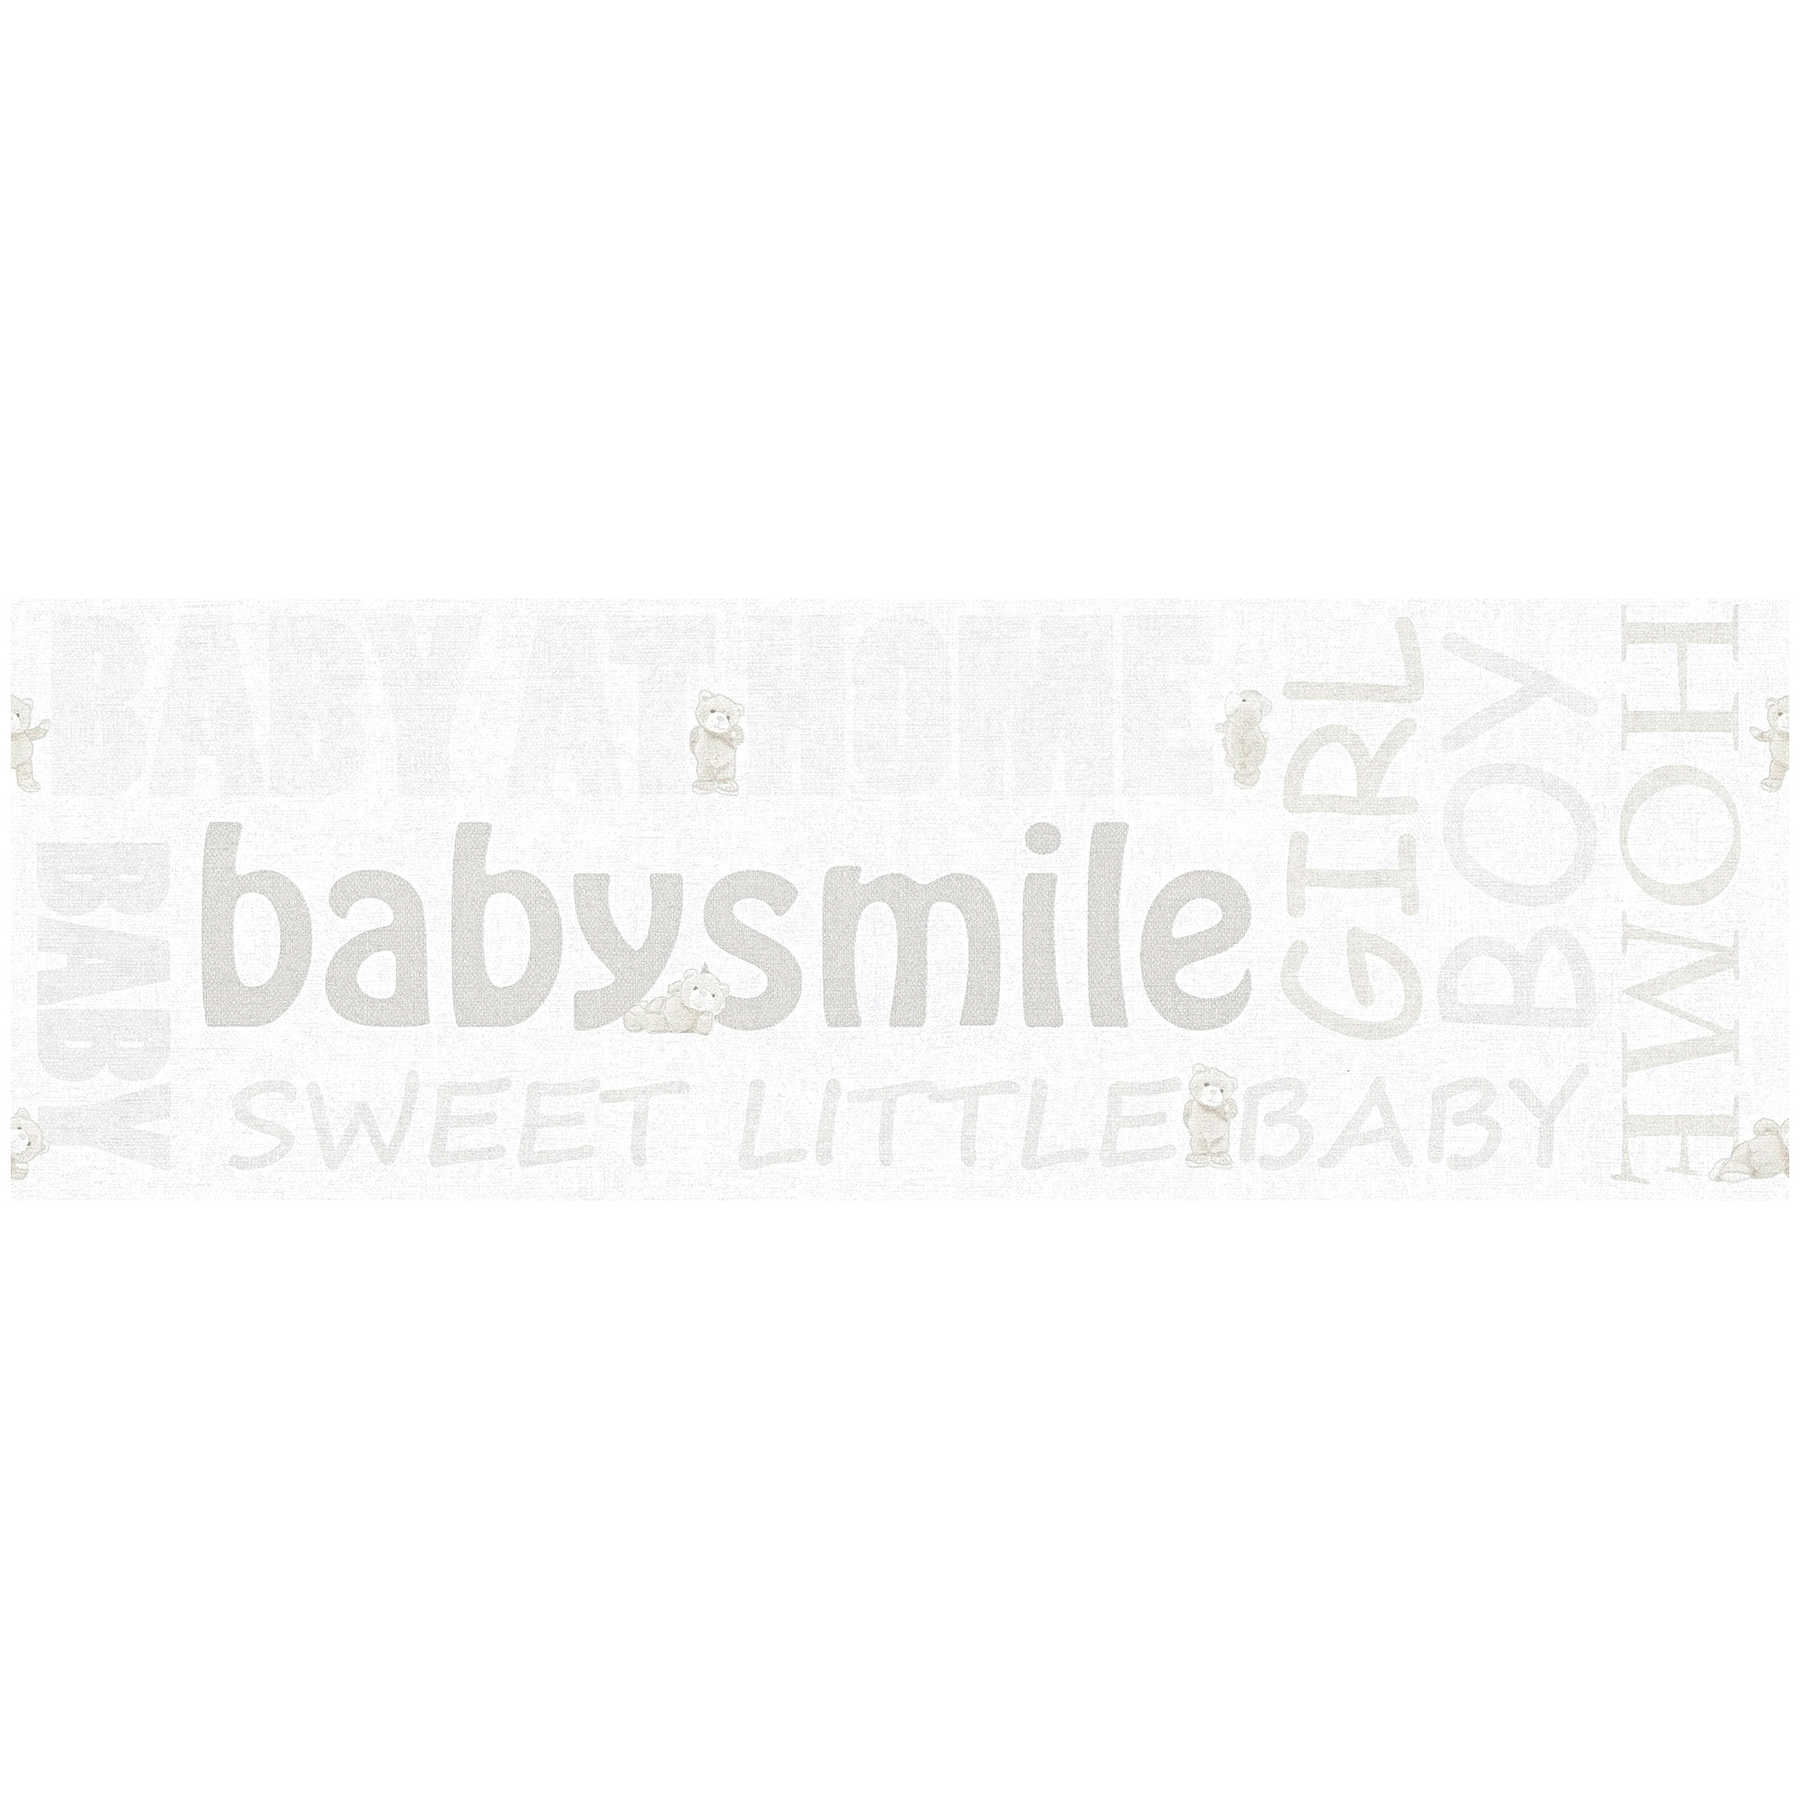 Bordo per cameretta Baby Smile con effetto metallizzato - Bianco
